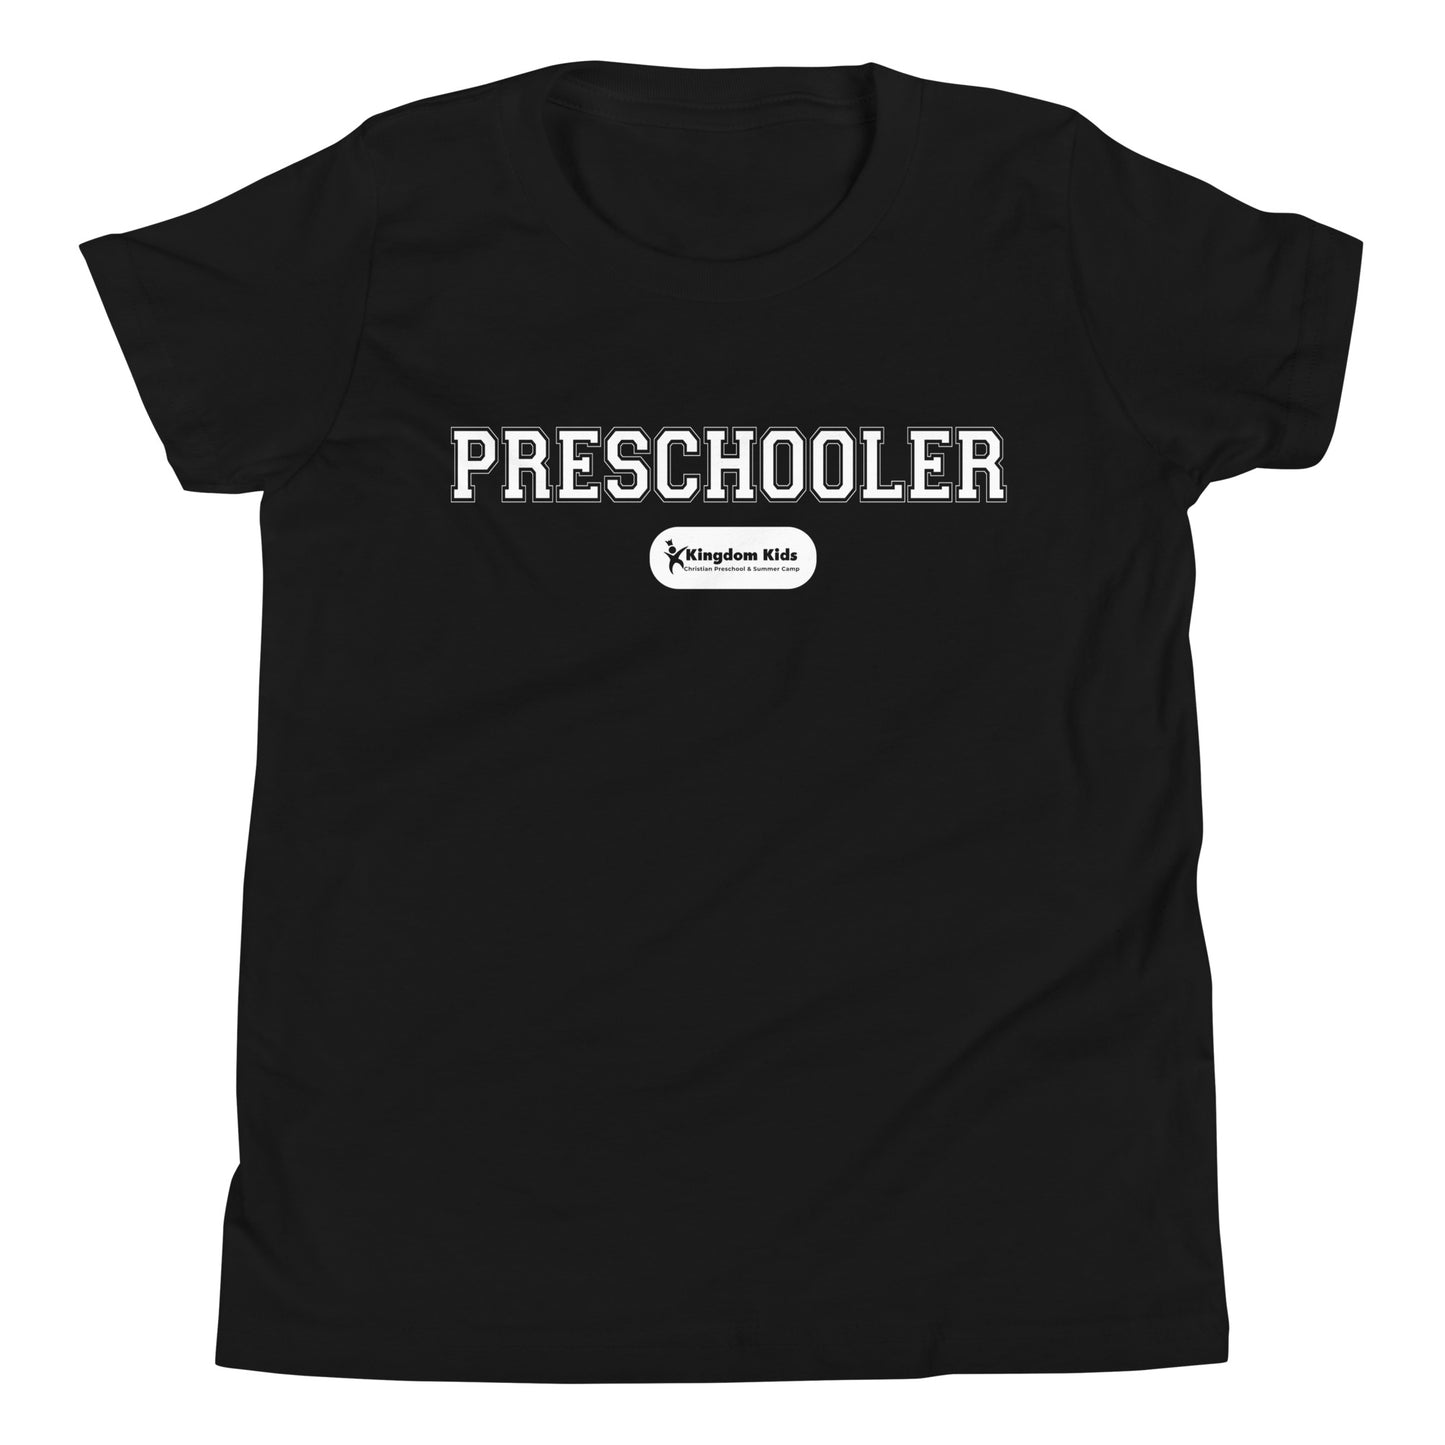 "Preschooler" - Youth Short Sleeve T-Shirt